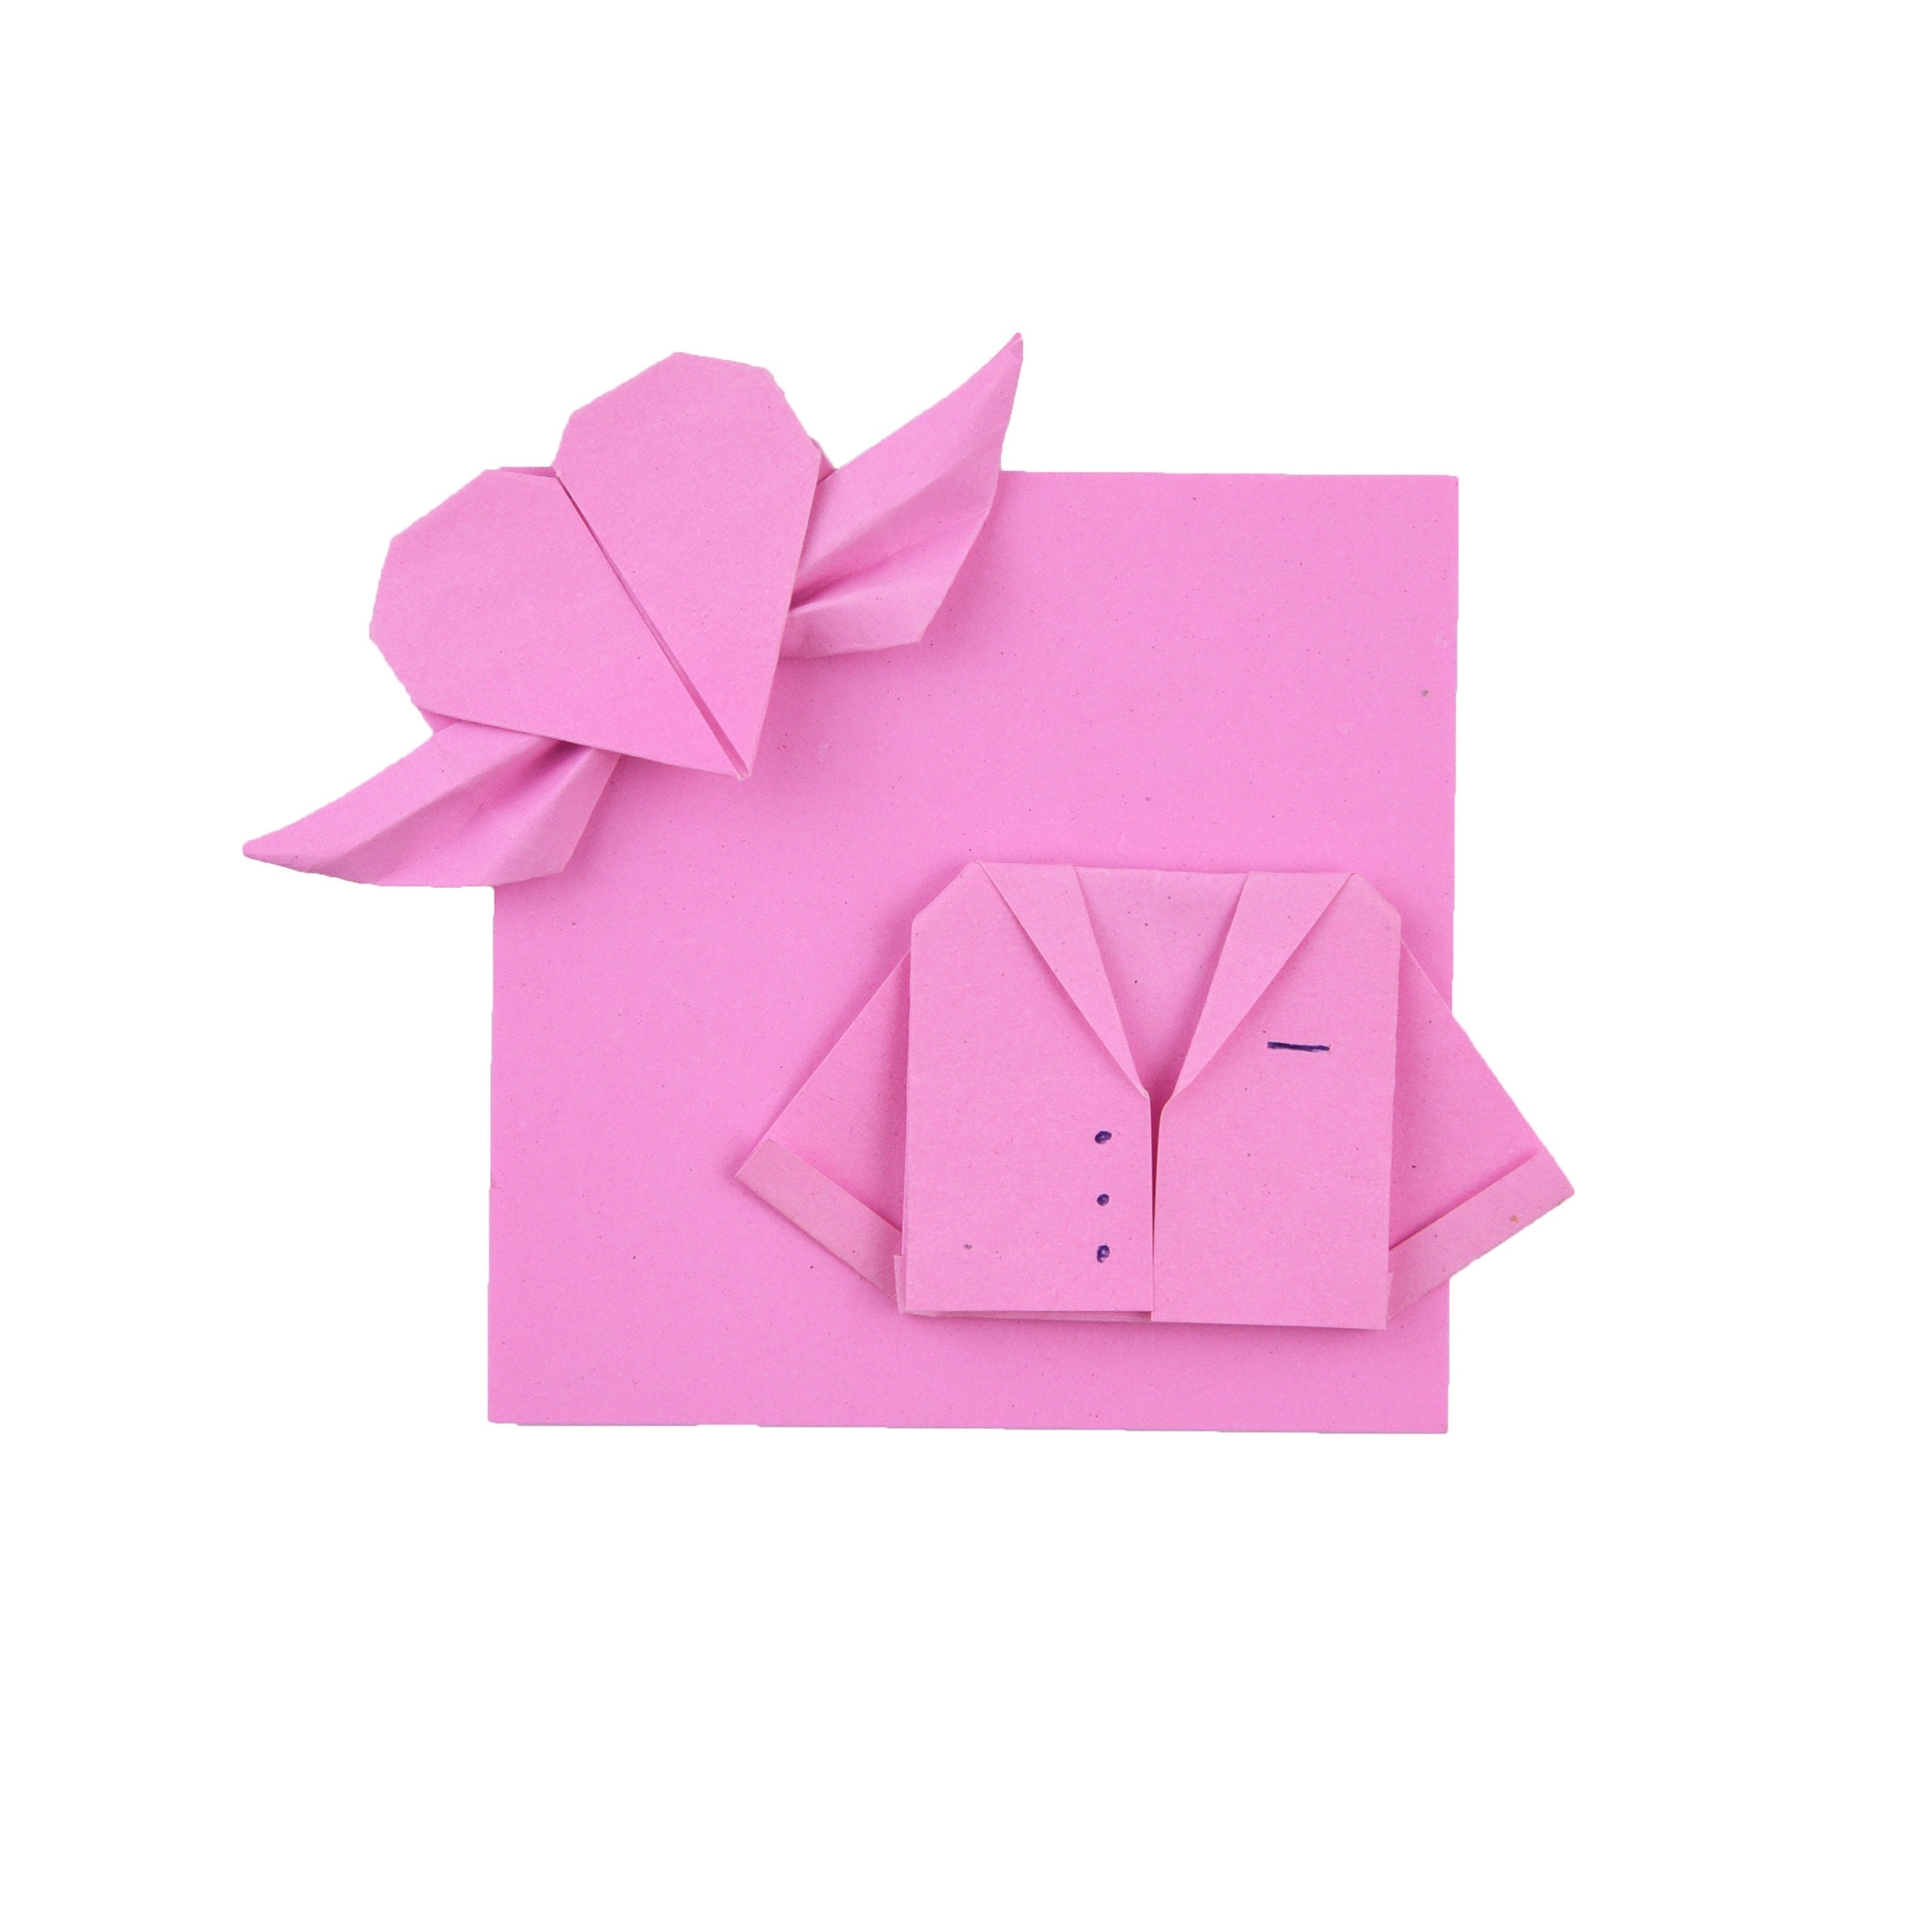 100 fogli di carta origami - 3x3 pollici - Confezione di carta quadrata per piegare, gru origami e decorazioni - S13